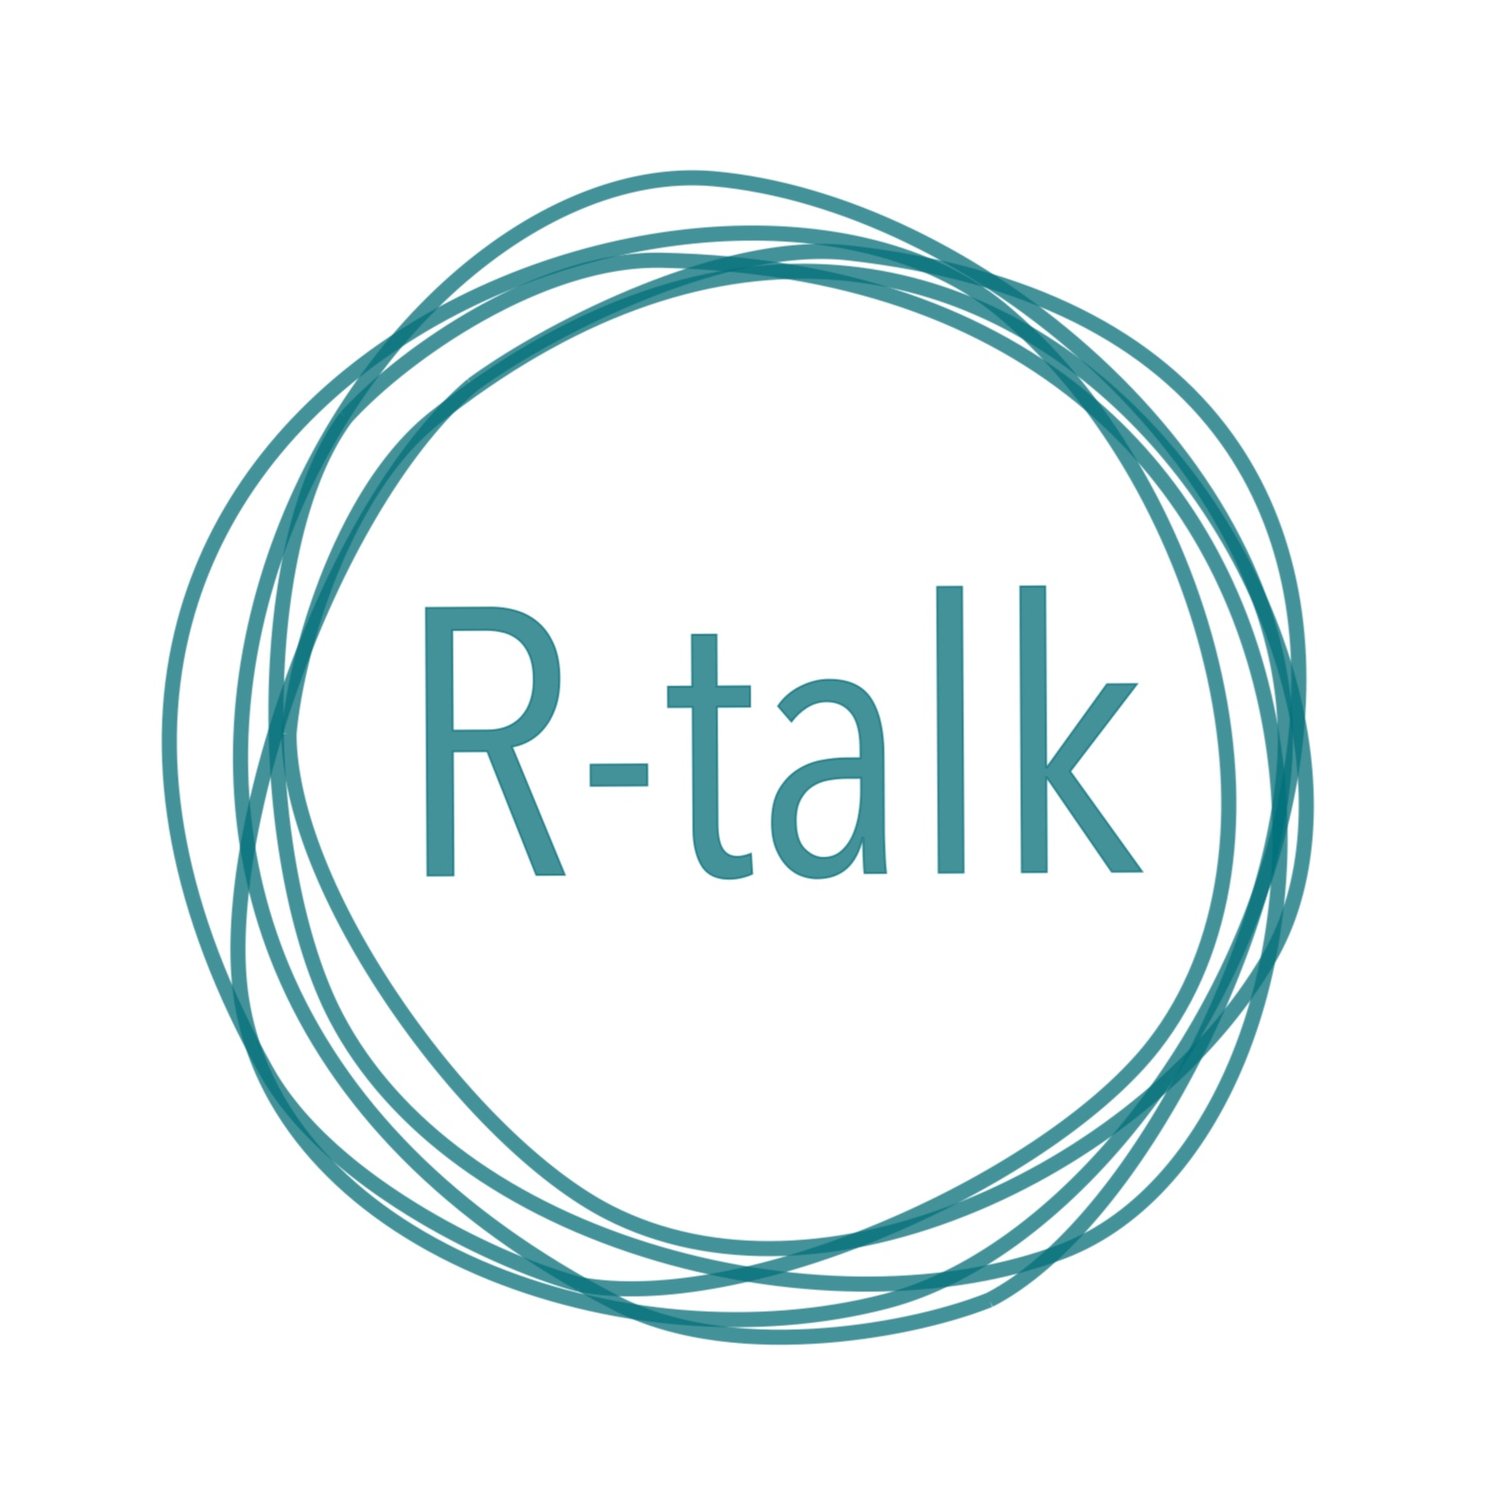 R-talk